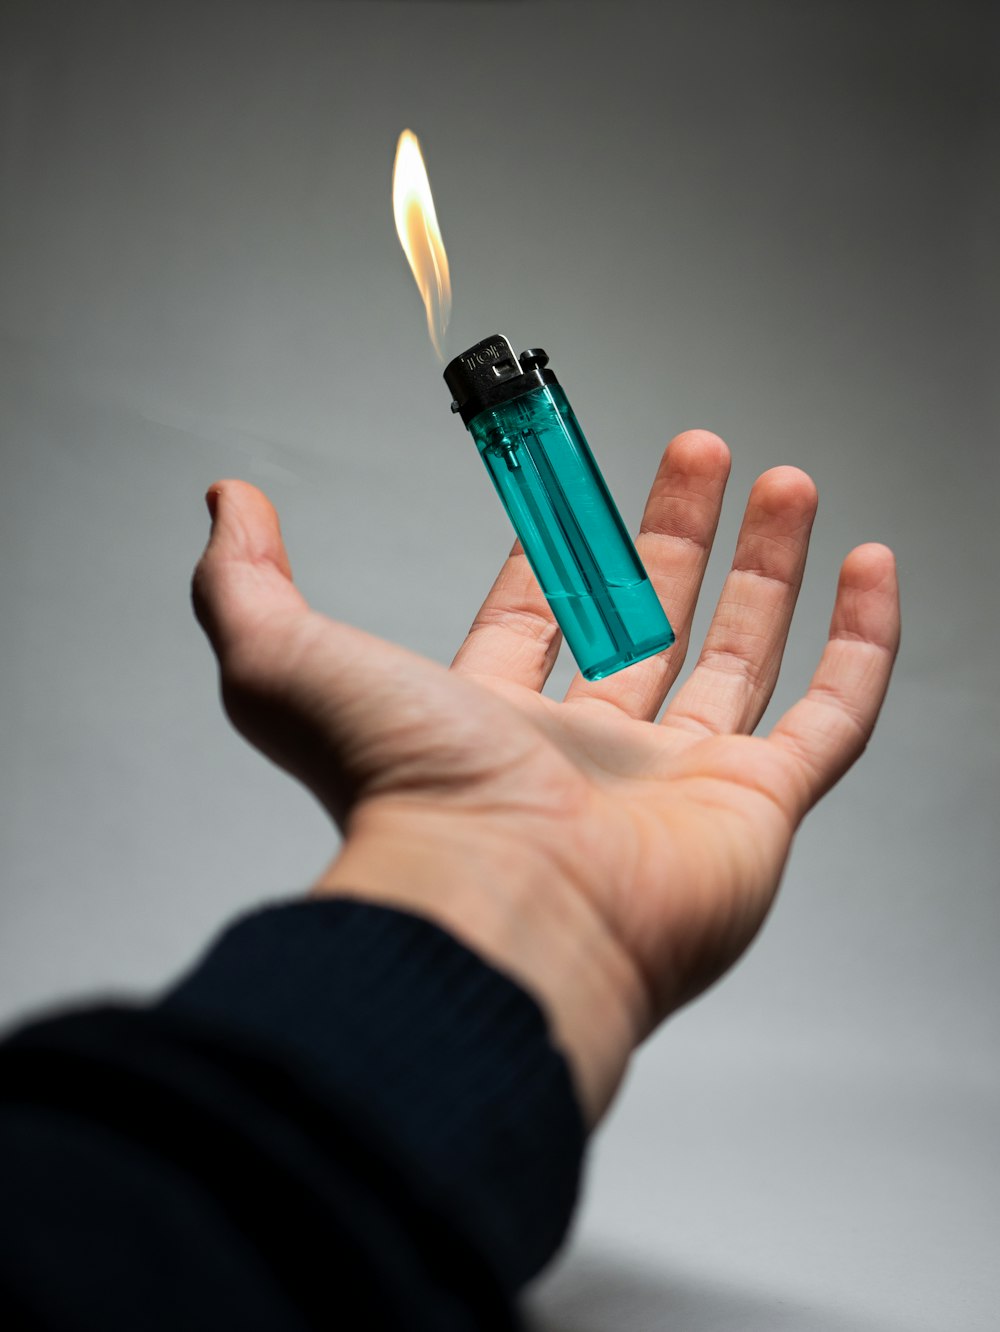 At understrege Afslut Forkludret Cigarette Lighter Pictures | Download Free Images on Unsplash